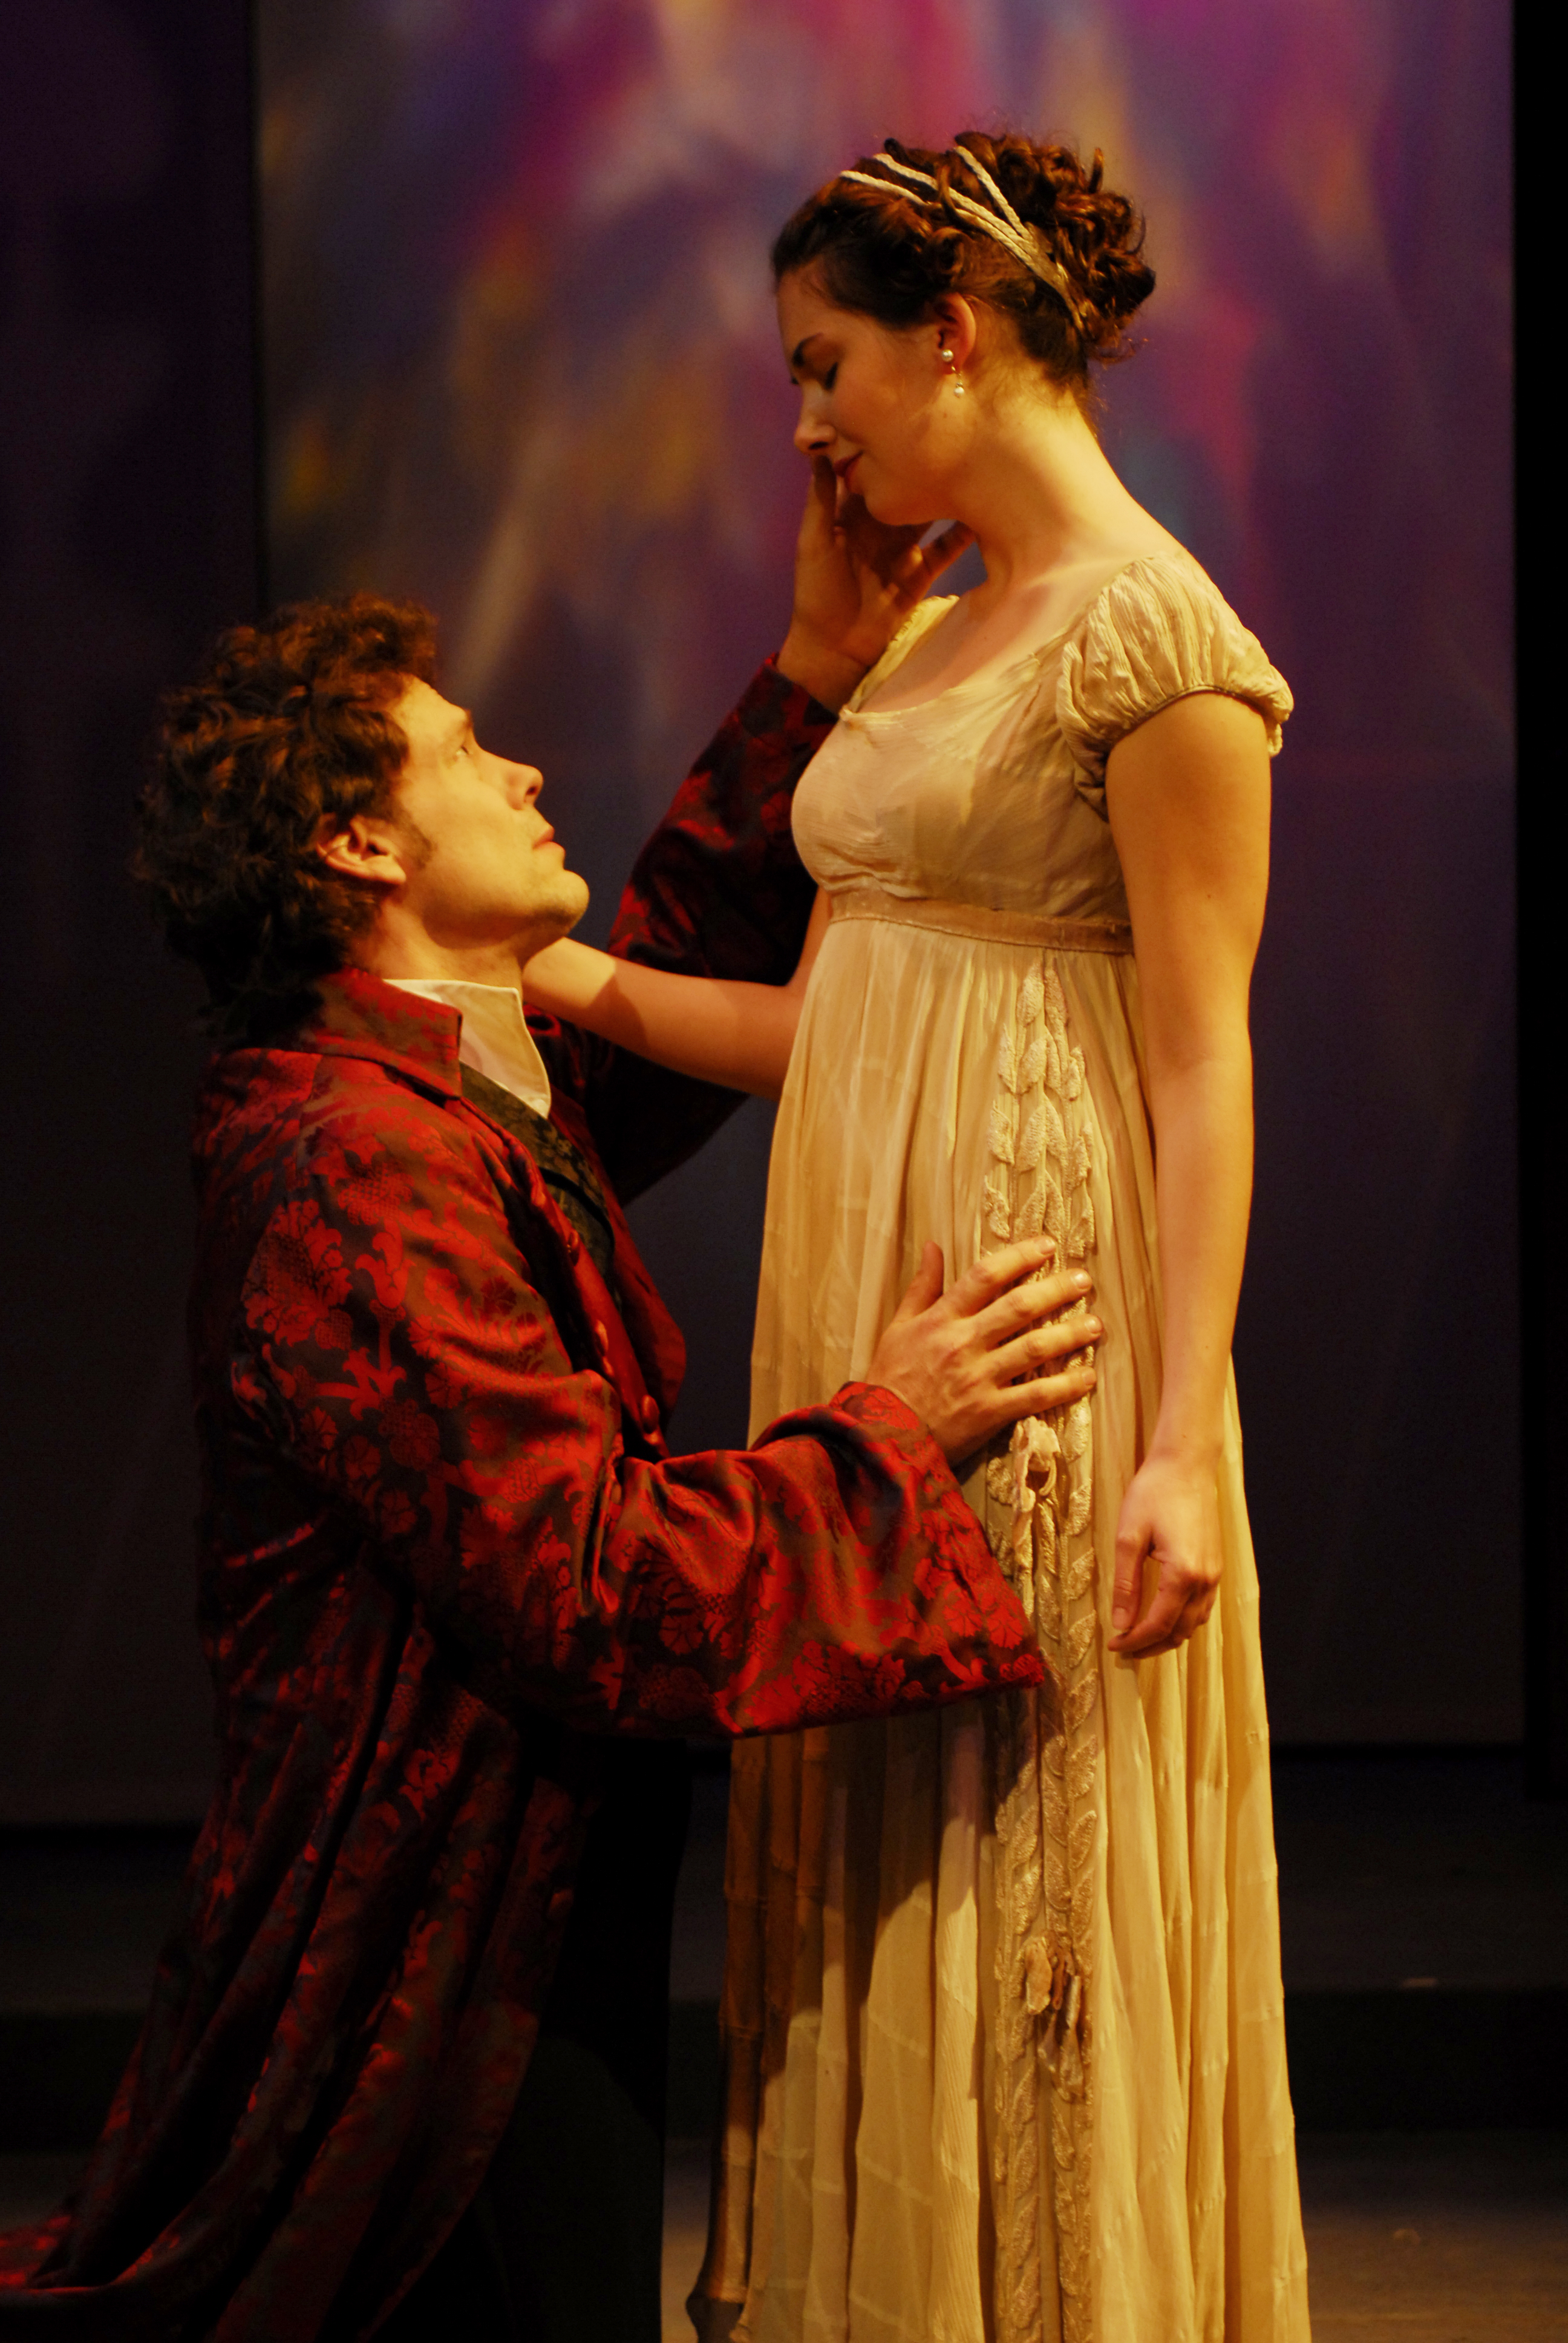 Joseph Fuqua (Hamlet) with Alison Brie(Ophelia)